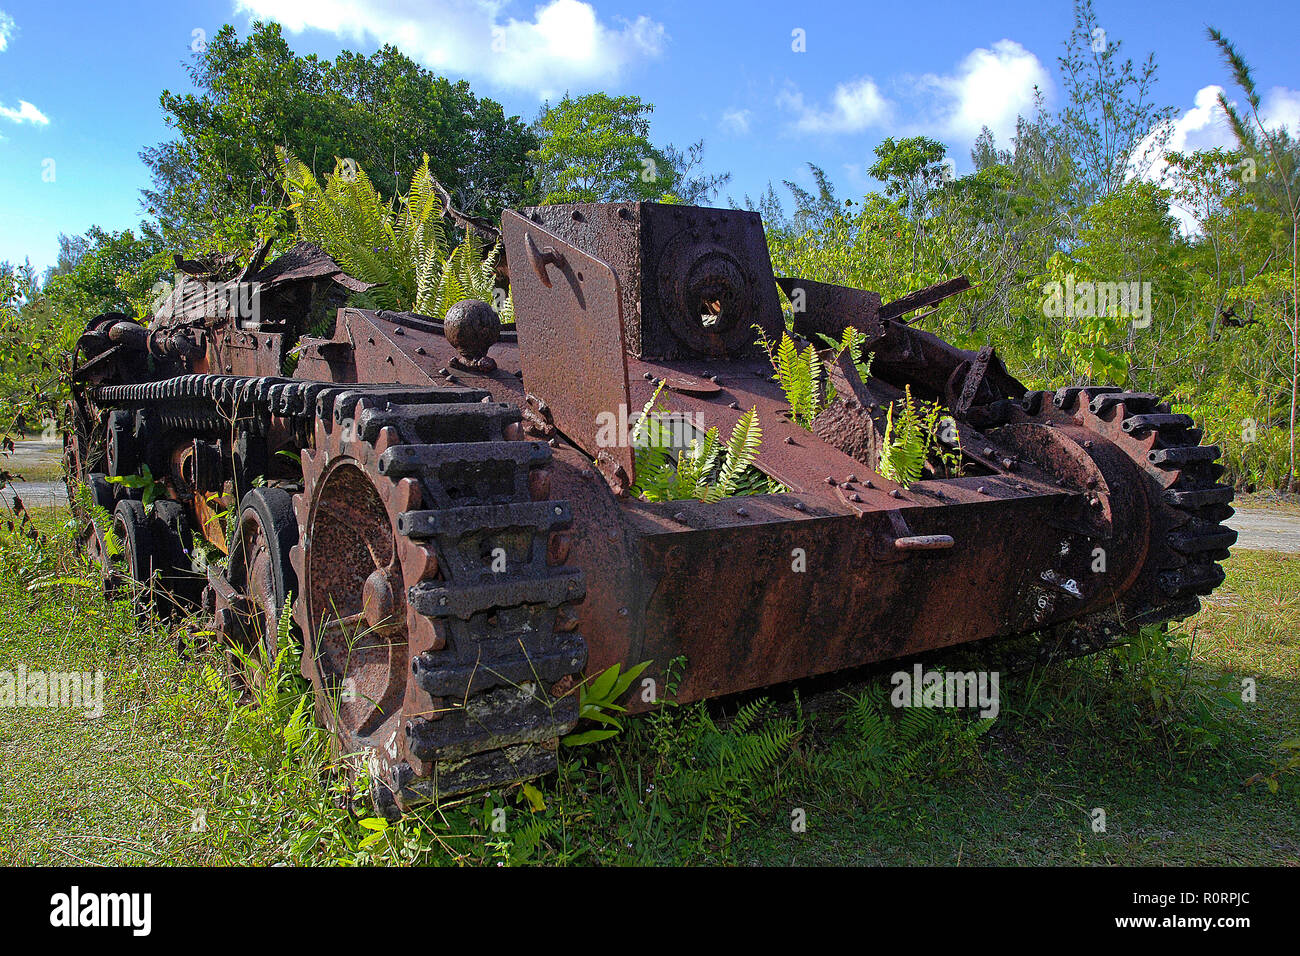 Verrosteter Panzer aus dem 2. Weltkrieg Im Dschungel, Palaos, Mikronesien | réservoir rouillé de 2e guerre mondiale au jungle, Palau, Micronésie Banque D'Images